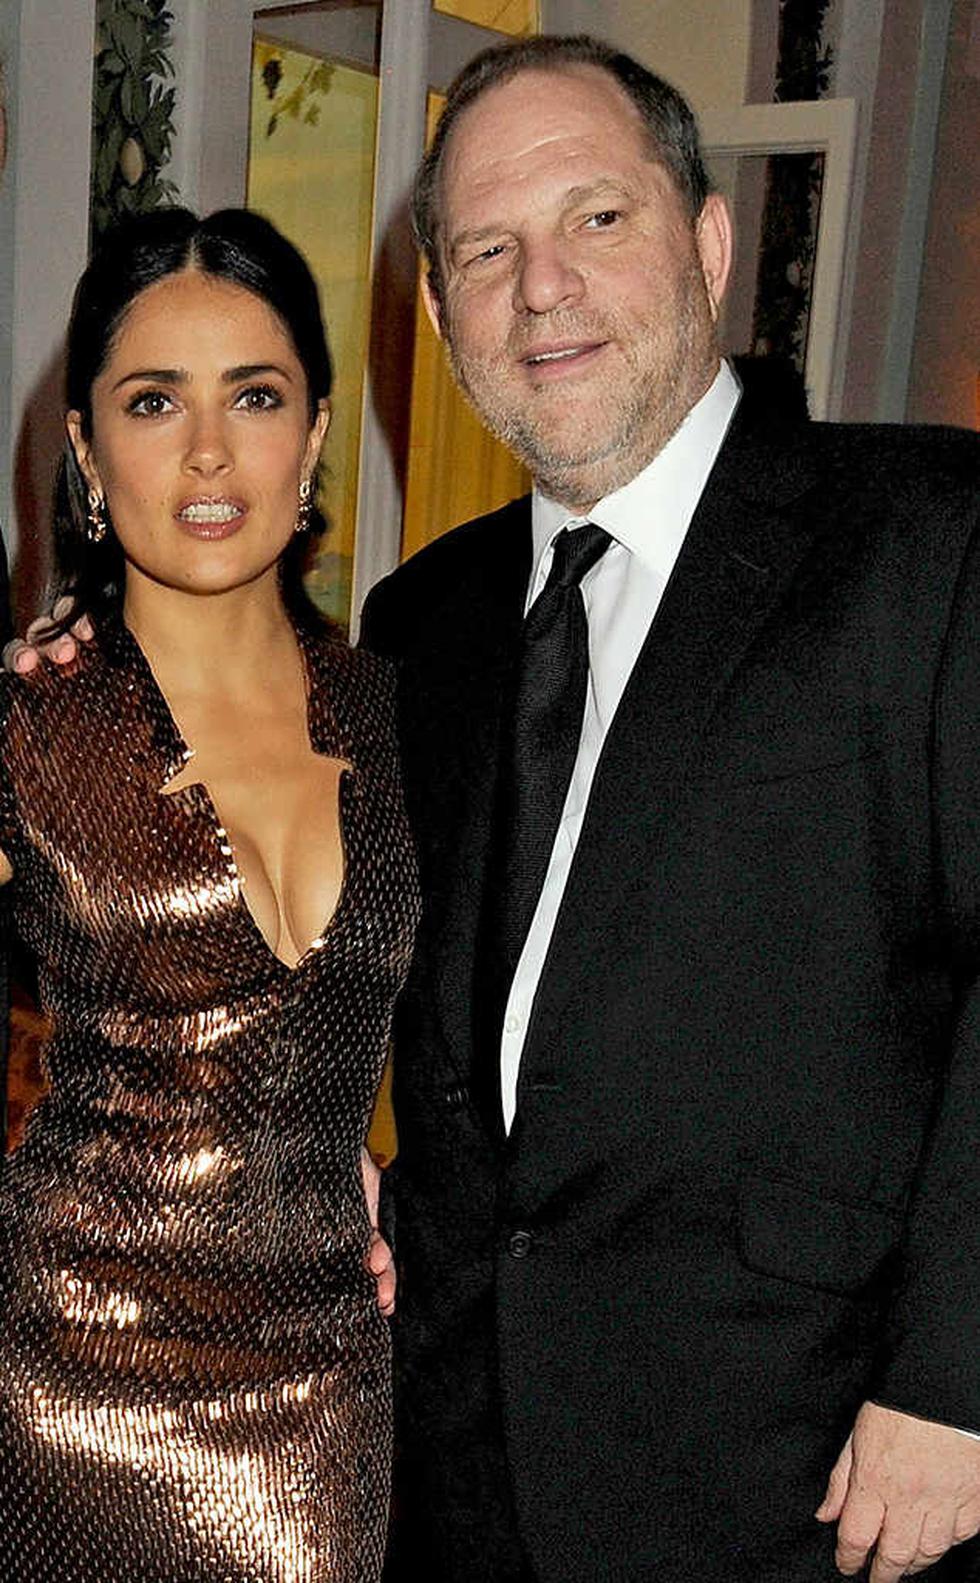 La actriz mexicana Salma Hayek sufrió acoso del productor de Hollywood  Harvey Weinstein.